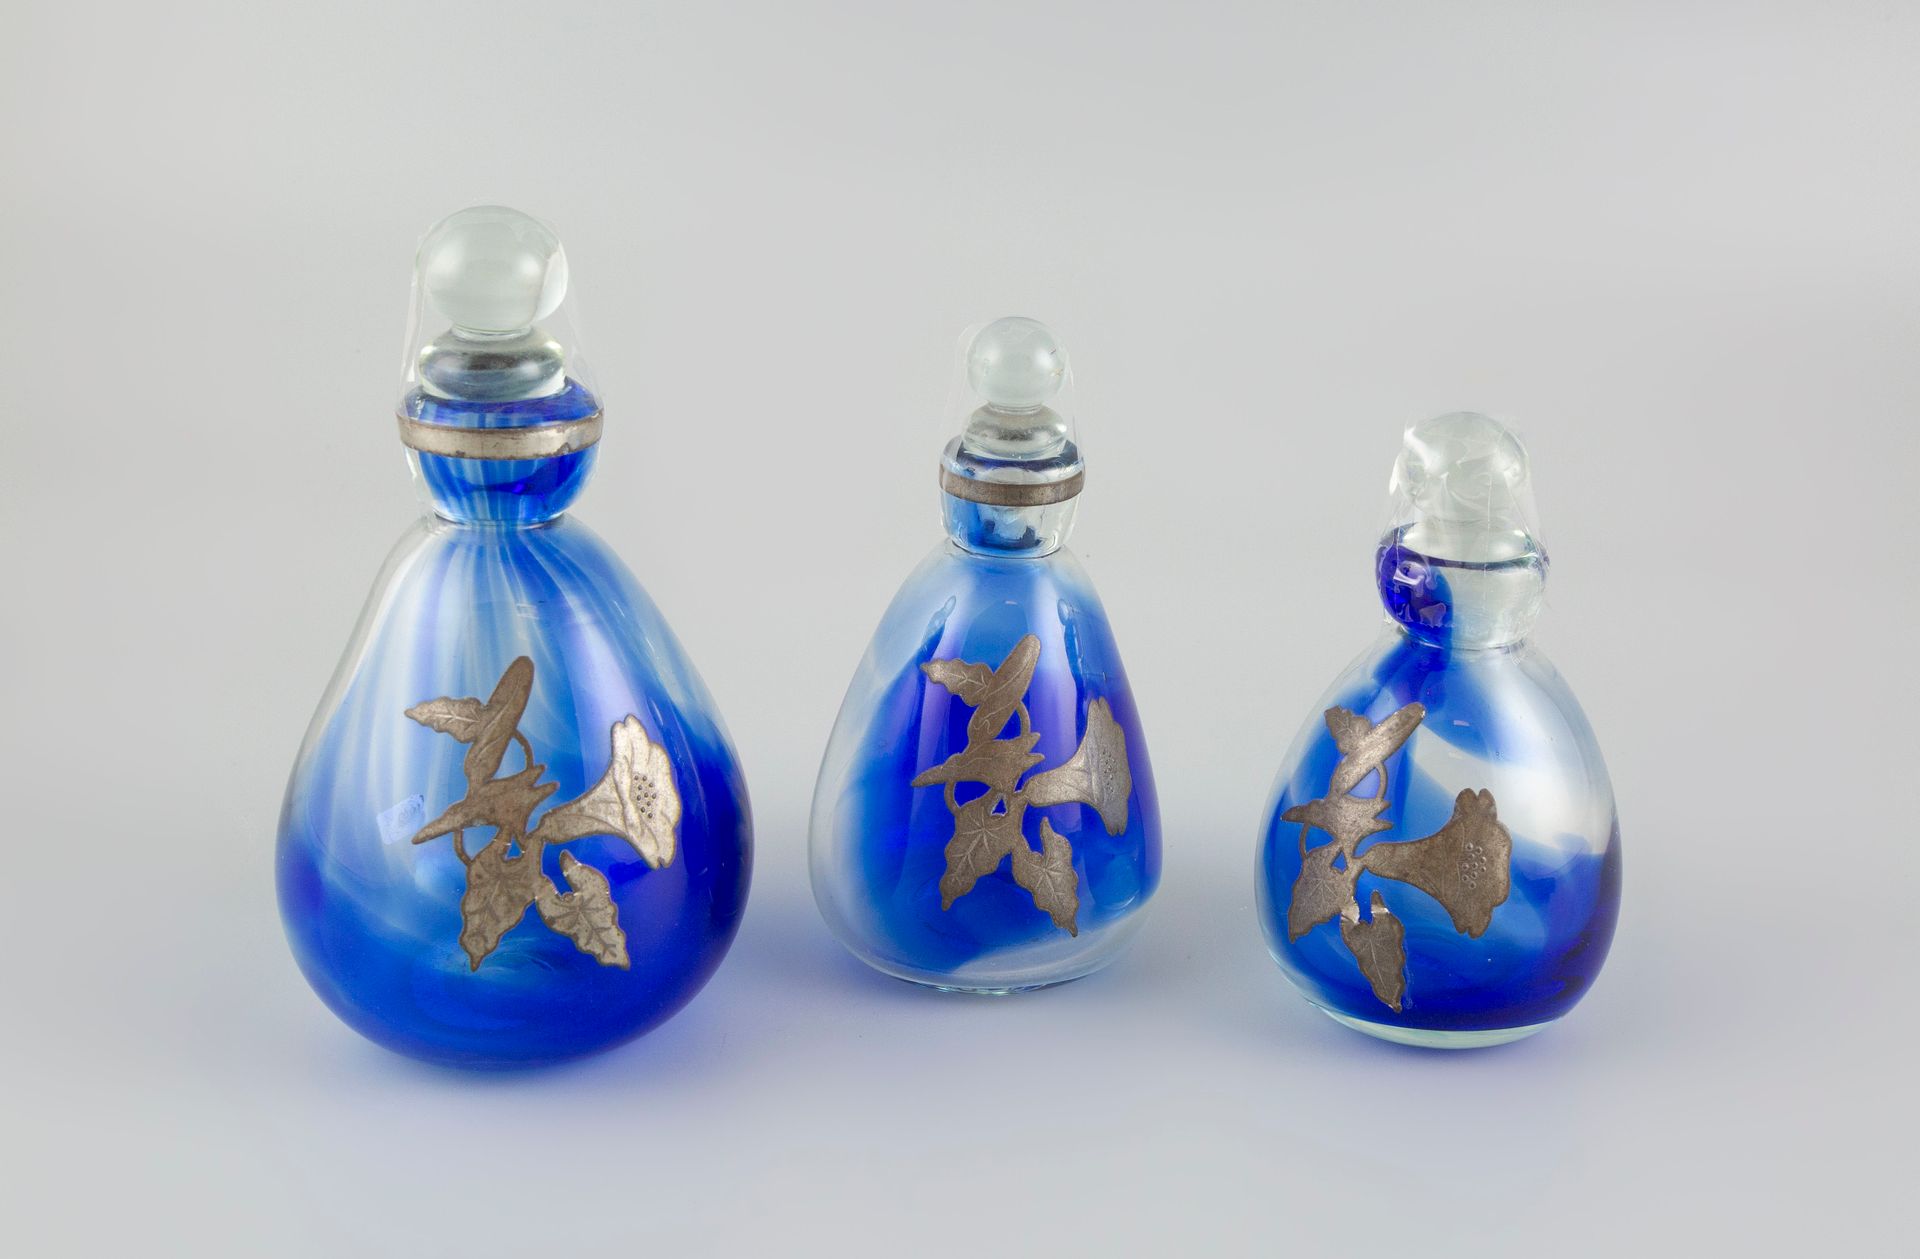 Null 让-克劳德-诺瓦罗（1943-2015）。三套蓝色有色玻璃瓶，装饰有锡器图案。(1个瓶塞损坏，1个瓶子上的锡叶脱落）。)